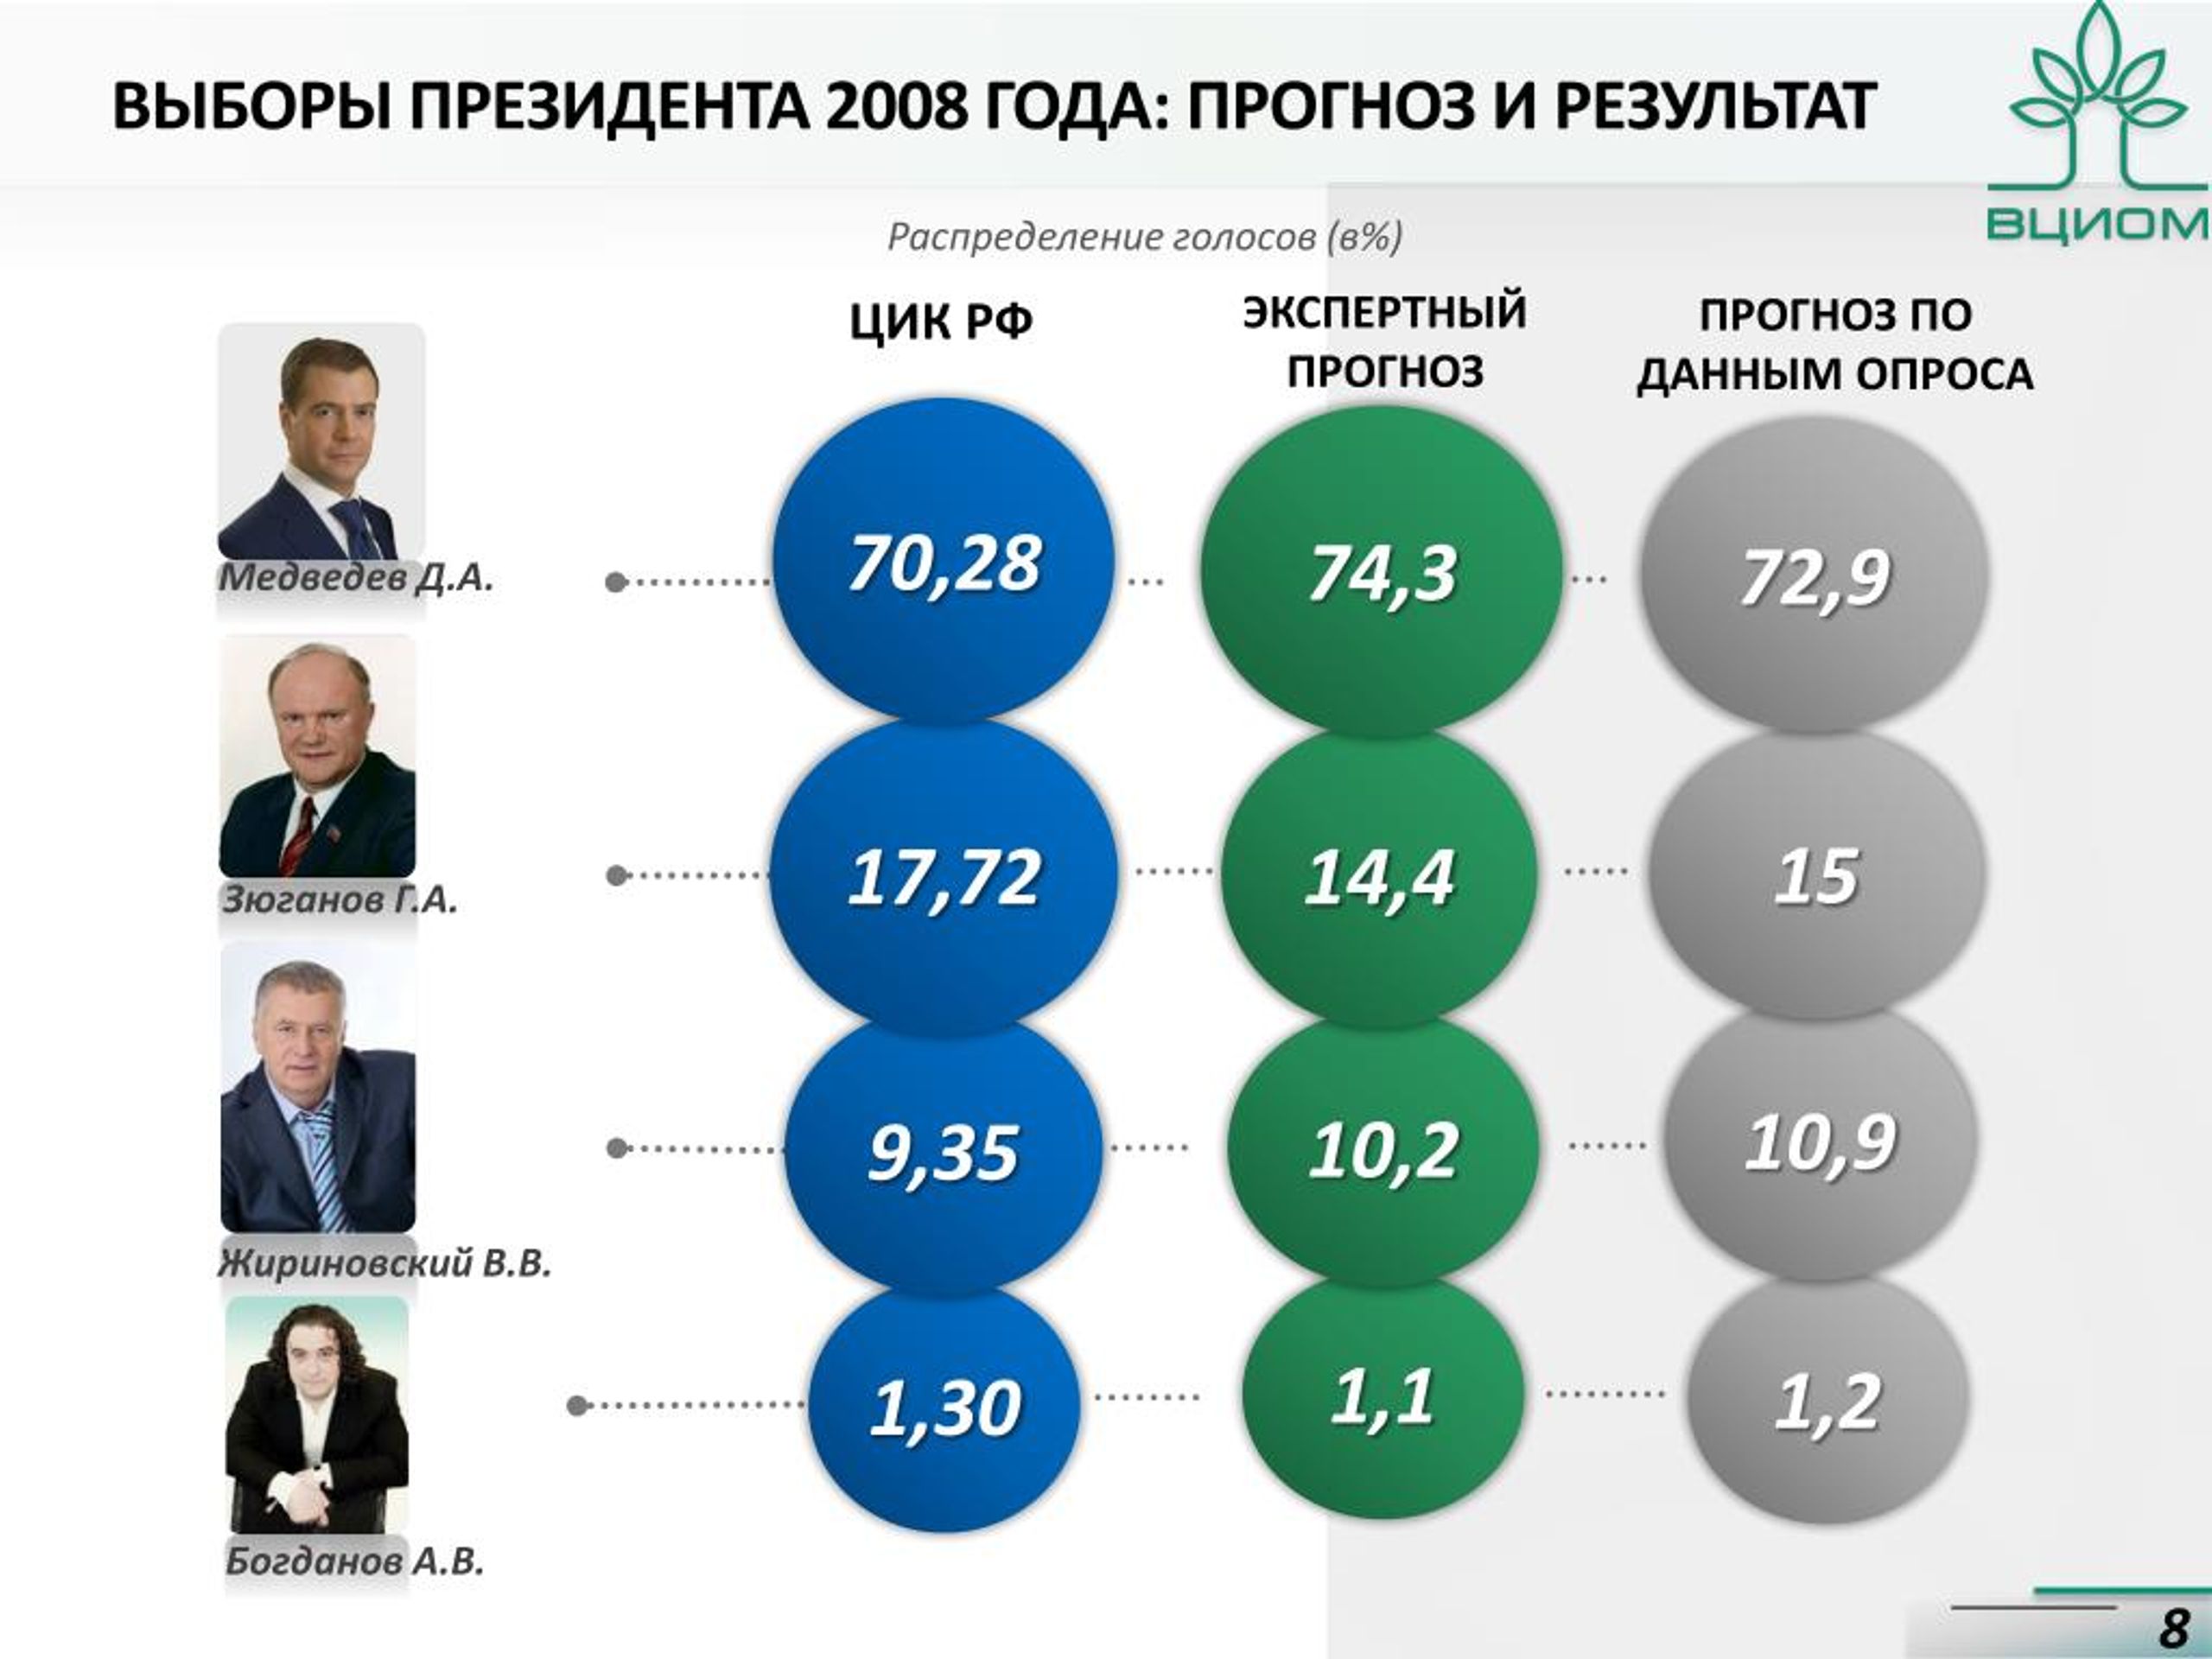 Какие претенденты на президента россии. Выборы 2008 года в России президента итоги. Итоги выборов 2008 года в России. Президентские выборы 2008 года итоги.